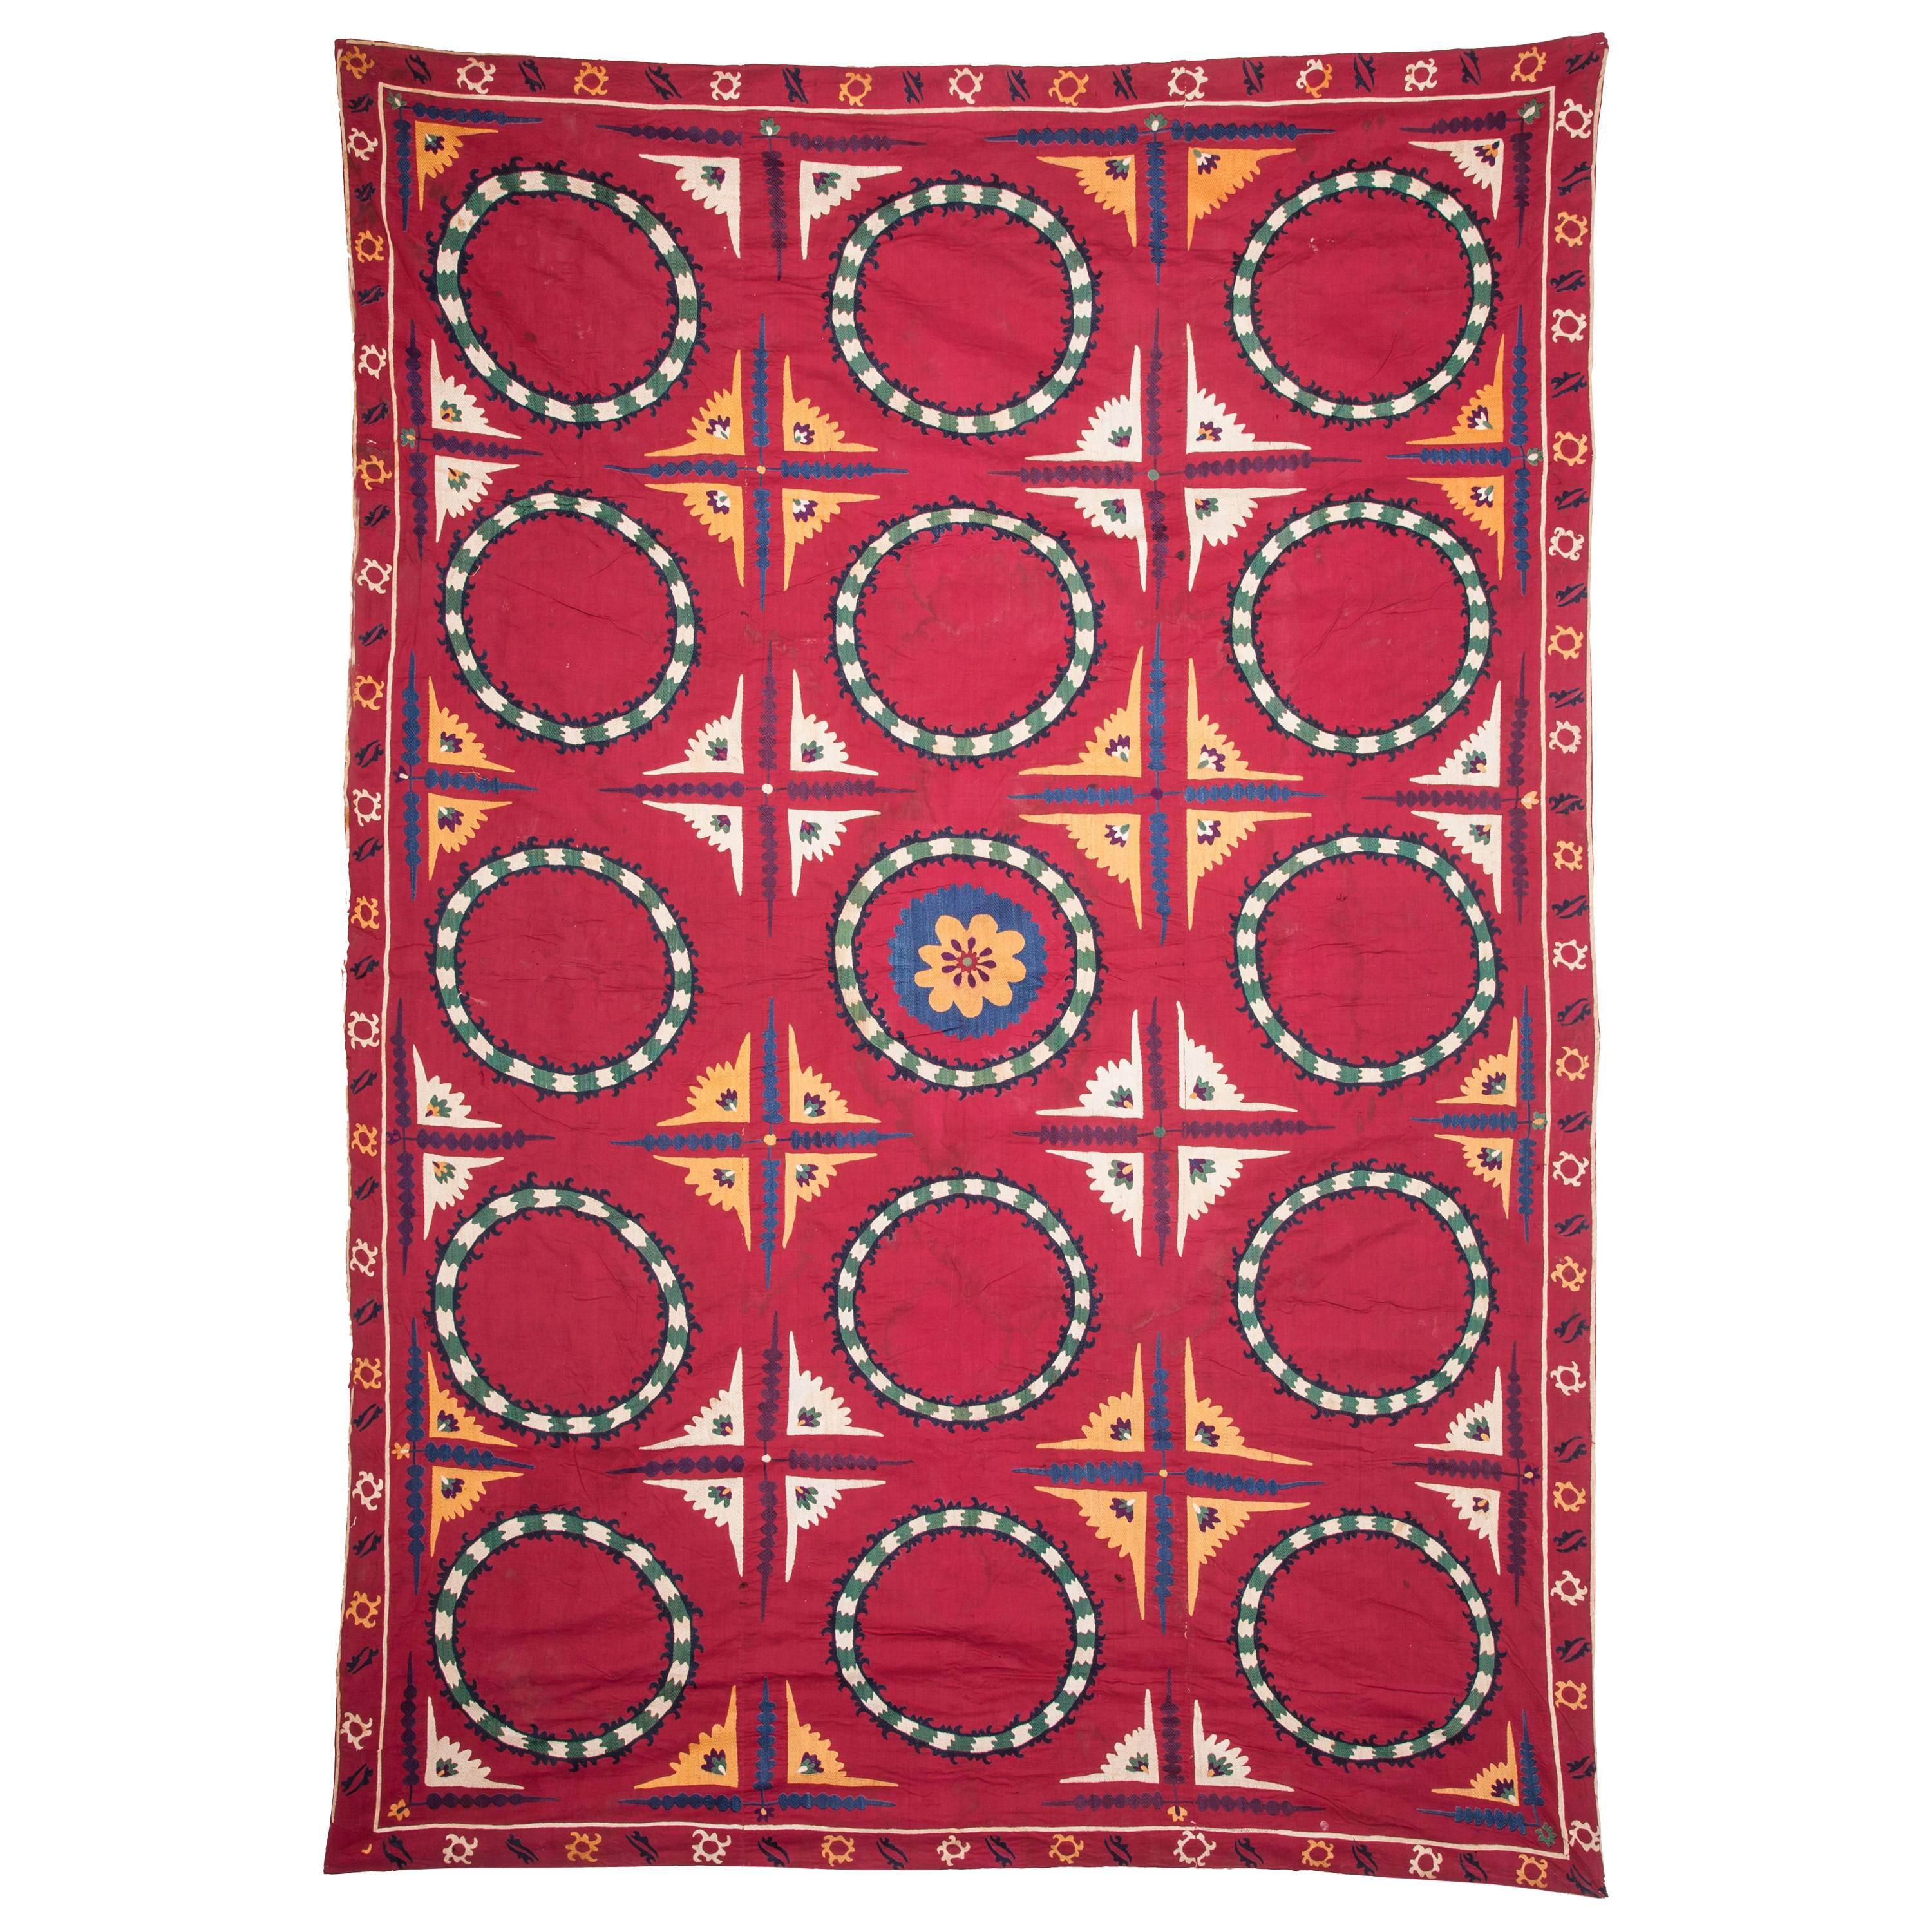 Early 20th Century, Uzbek Tashkent Suzani, Silk Embroidery on Cotton